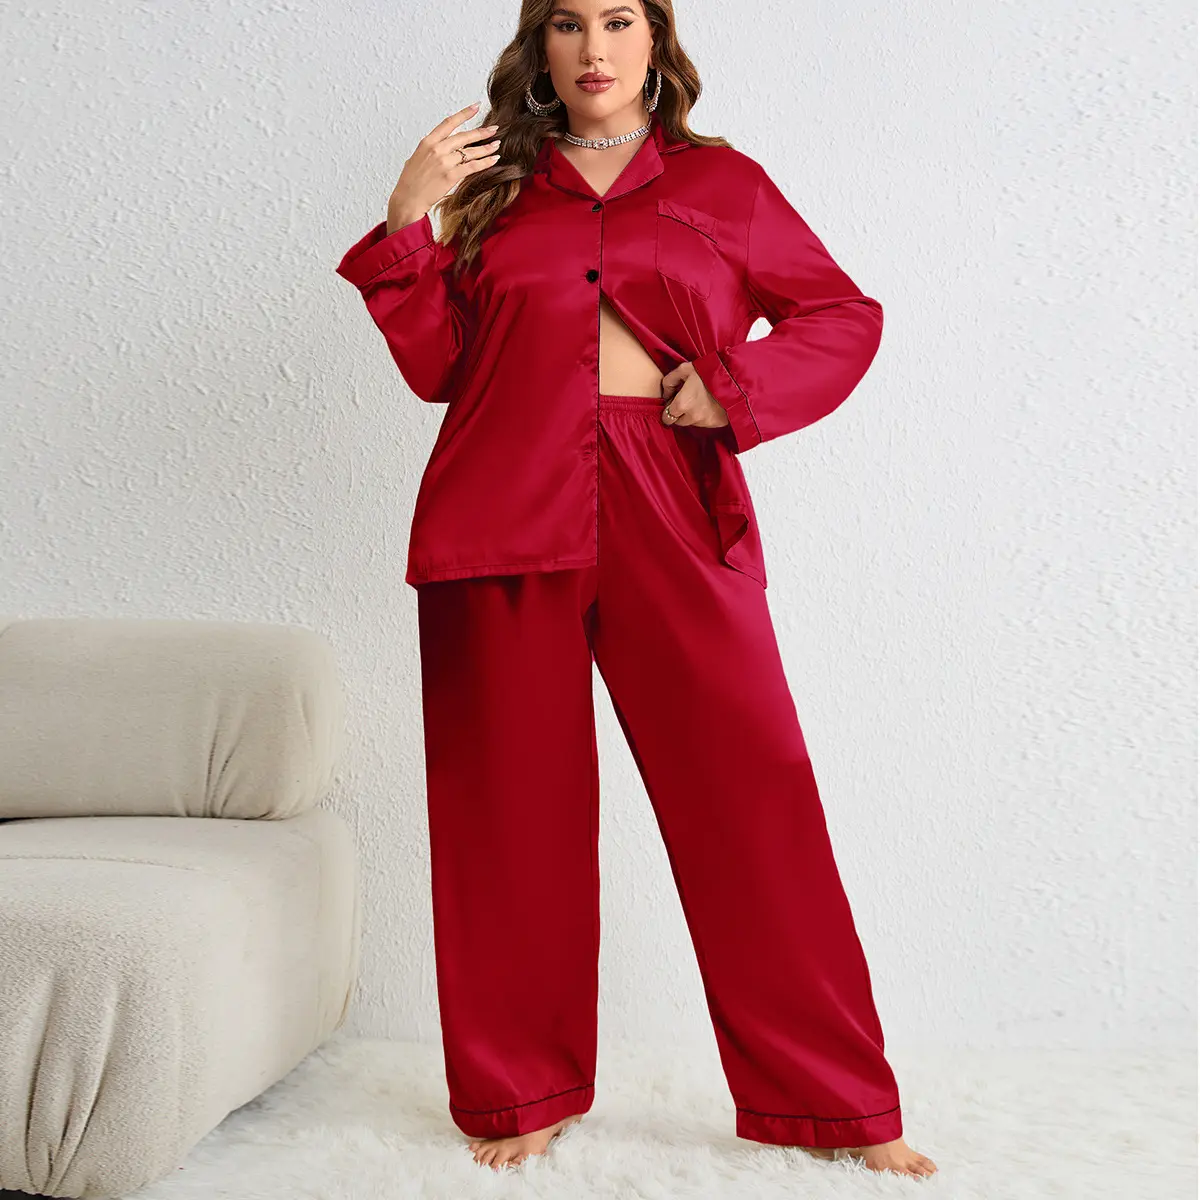 Plus Size Womens Pajama Sets Long Sleeve Button Down Sleepwear Nightwear Soft Pjs Lounge Sets